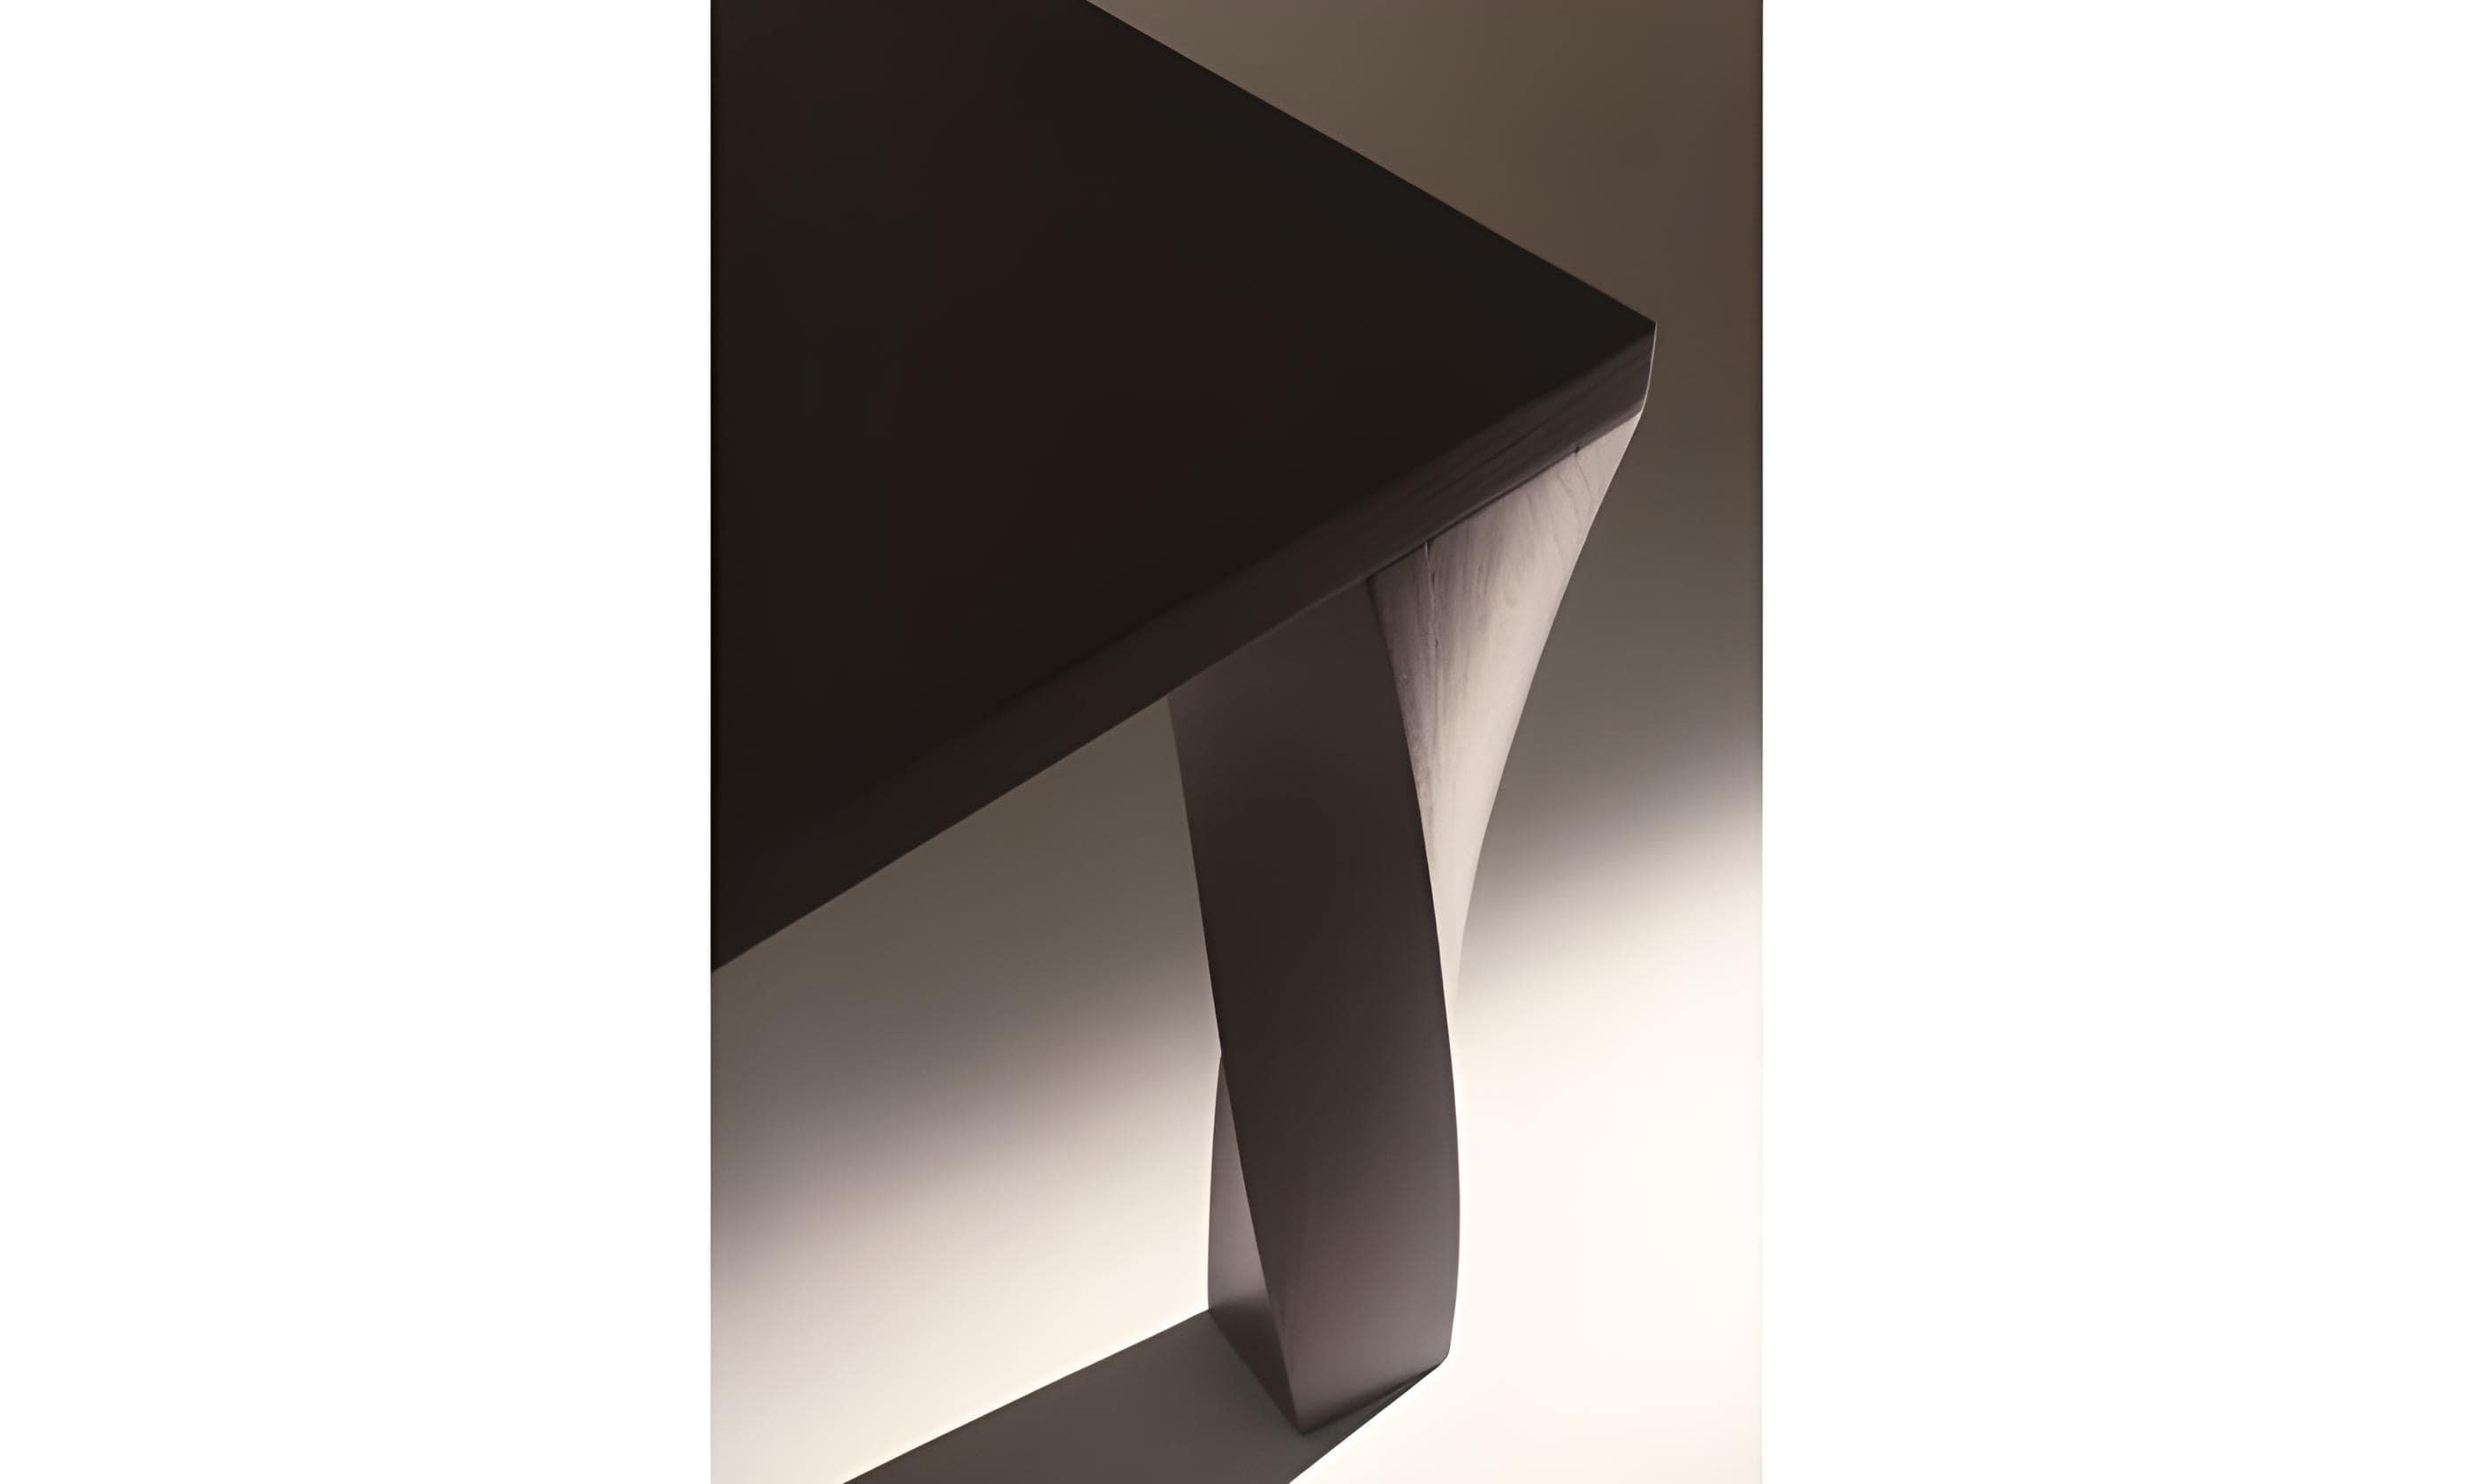 Gira che ti rigira ist ein rechteckiger Esstisch, der aus massivem, mattschwarz gebeiztem Ulmenholz gefertigt ist. Die anmutig gedrehten Beine dieses außergewöhnlichen Möbelstücks verleihen dem Design einen Hauch von Skurrilität und Kunstfertigkeit